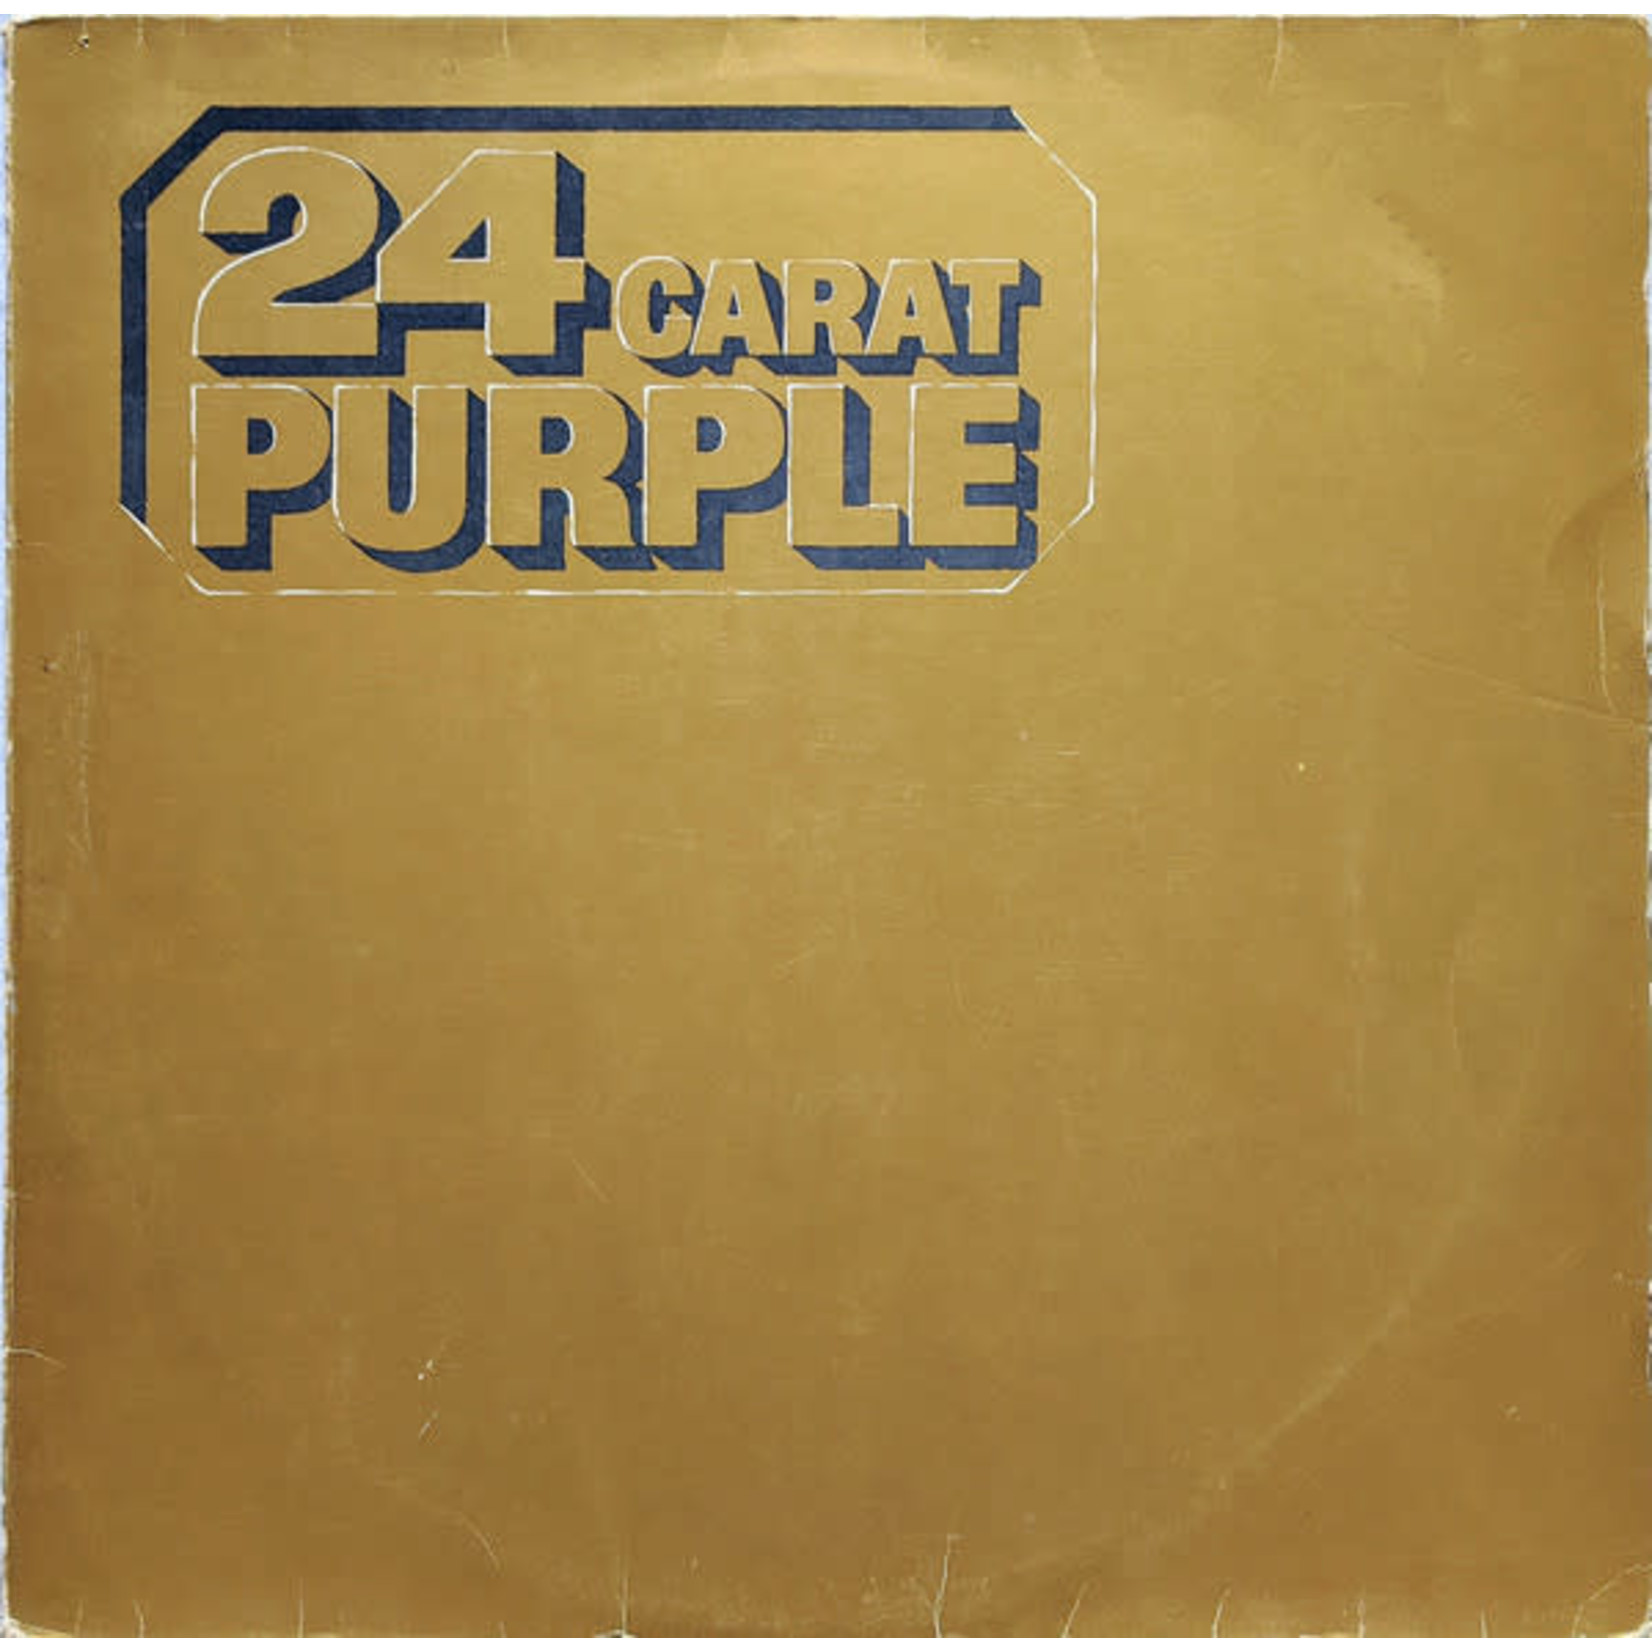 Deep Purple – 24 Carat Purple LP